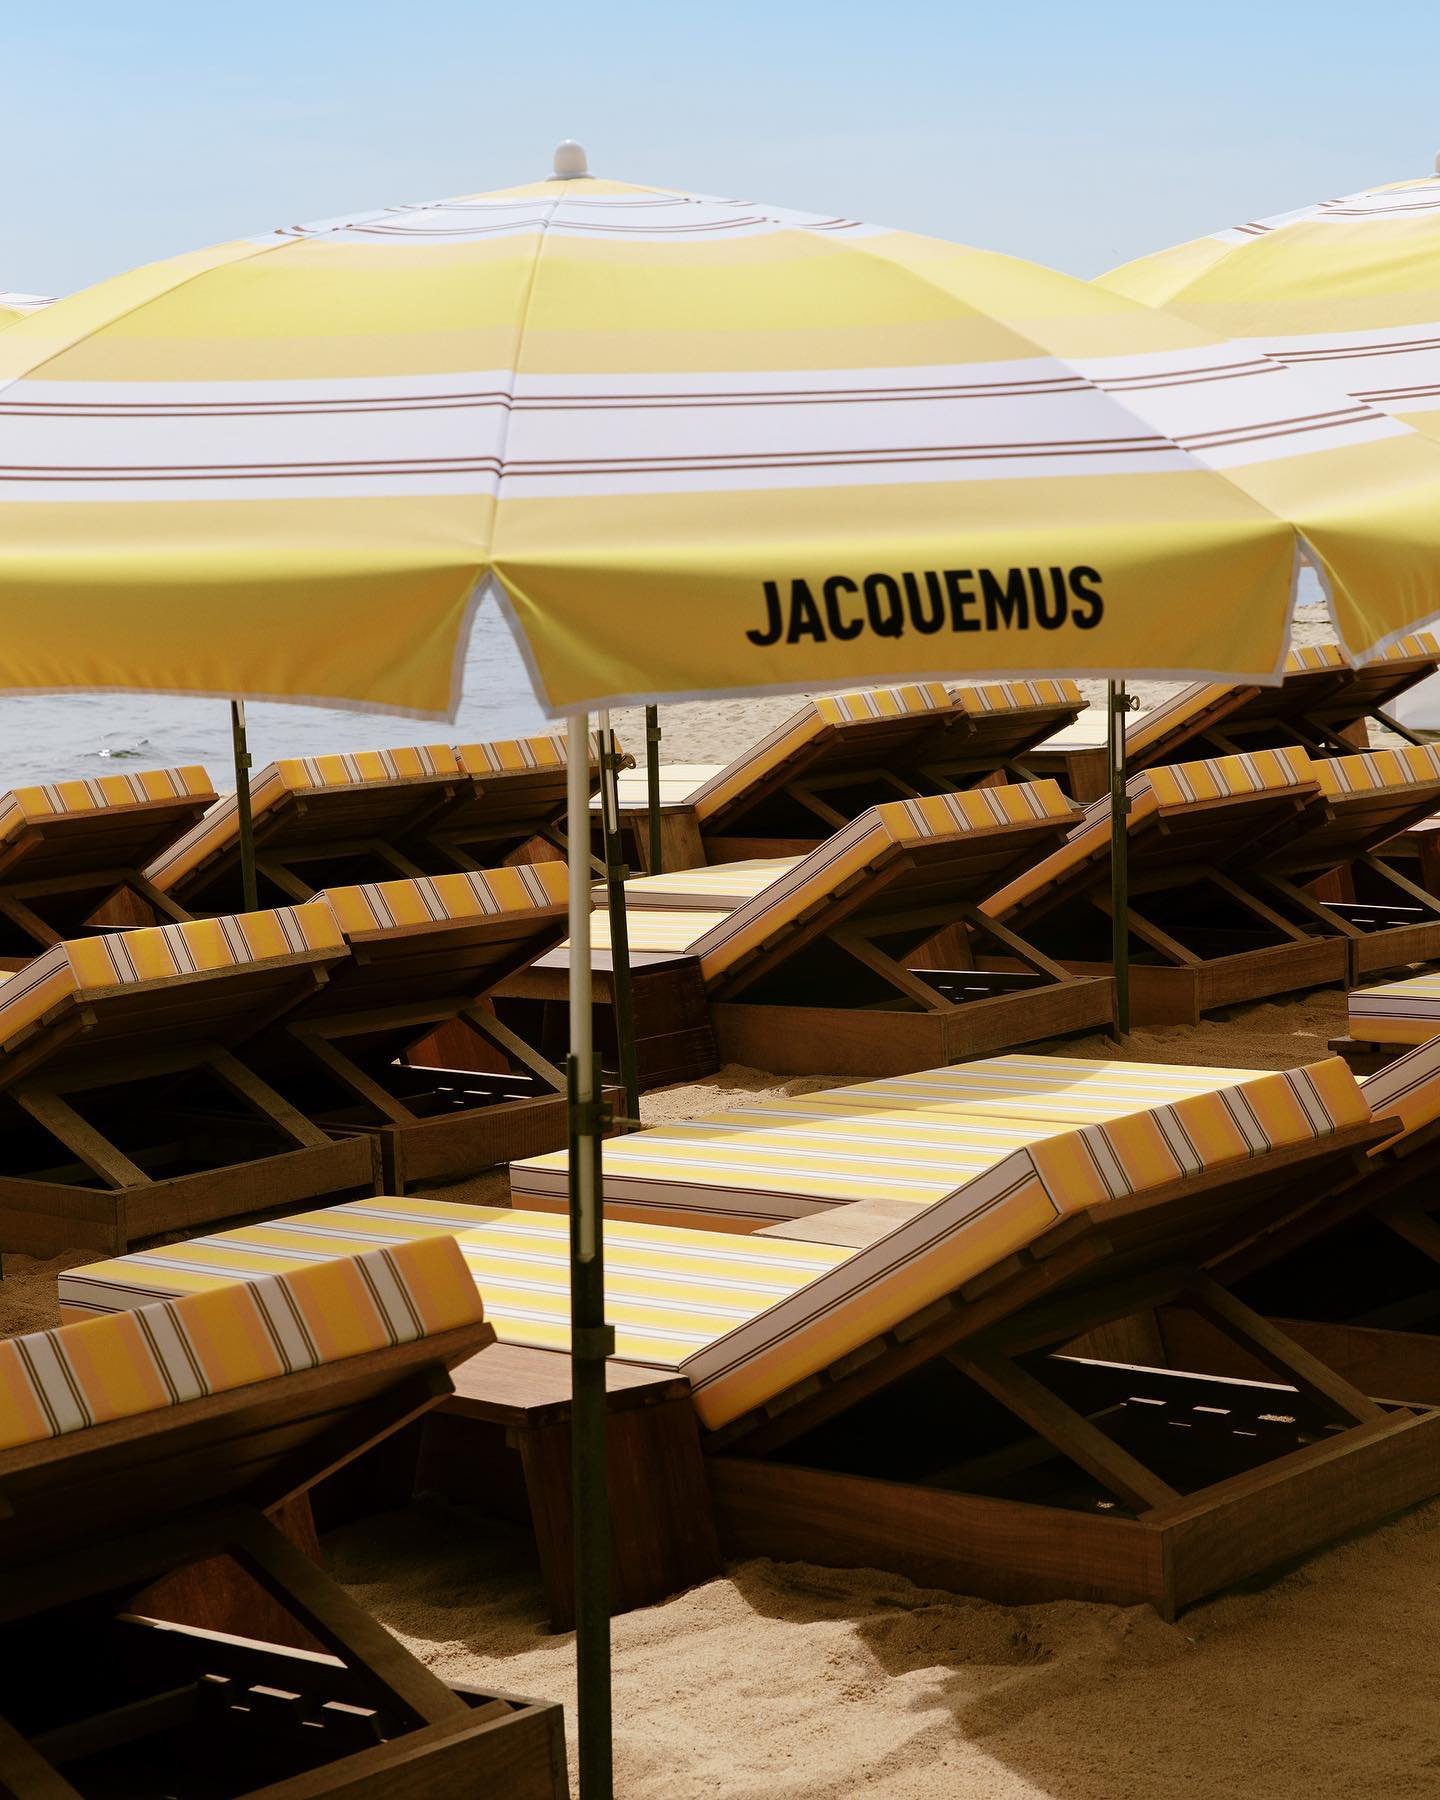 Jacquemus x Indie Beach - beach clubs - beach clubs - beach clubs - beach clubs - https://stealthelook.com.br